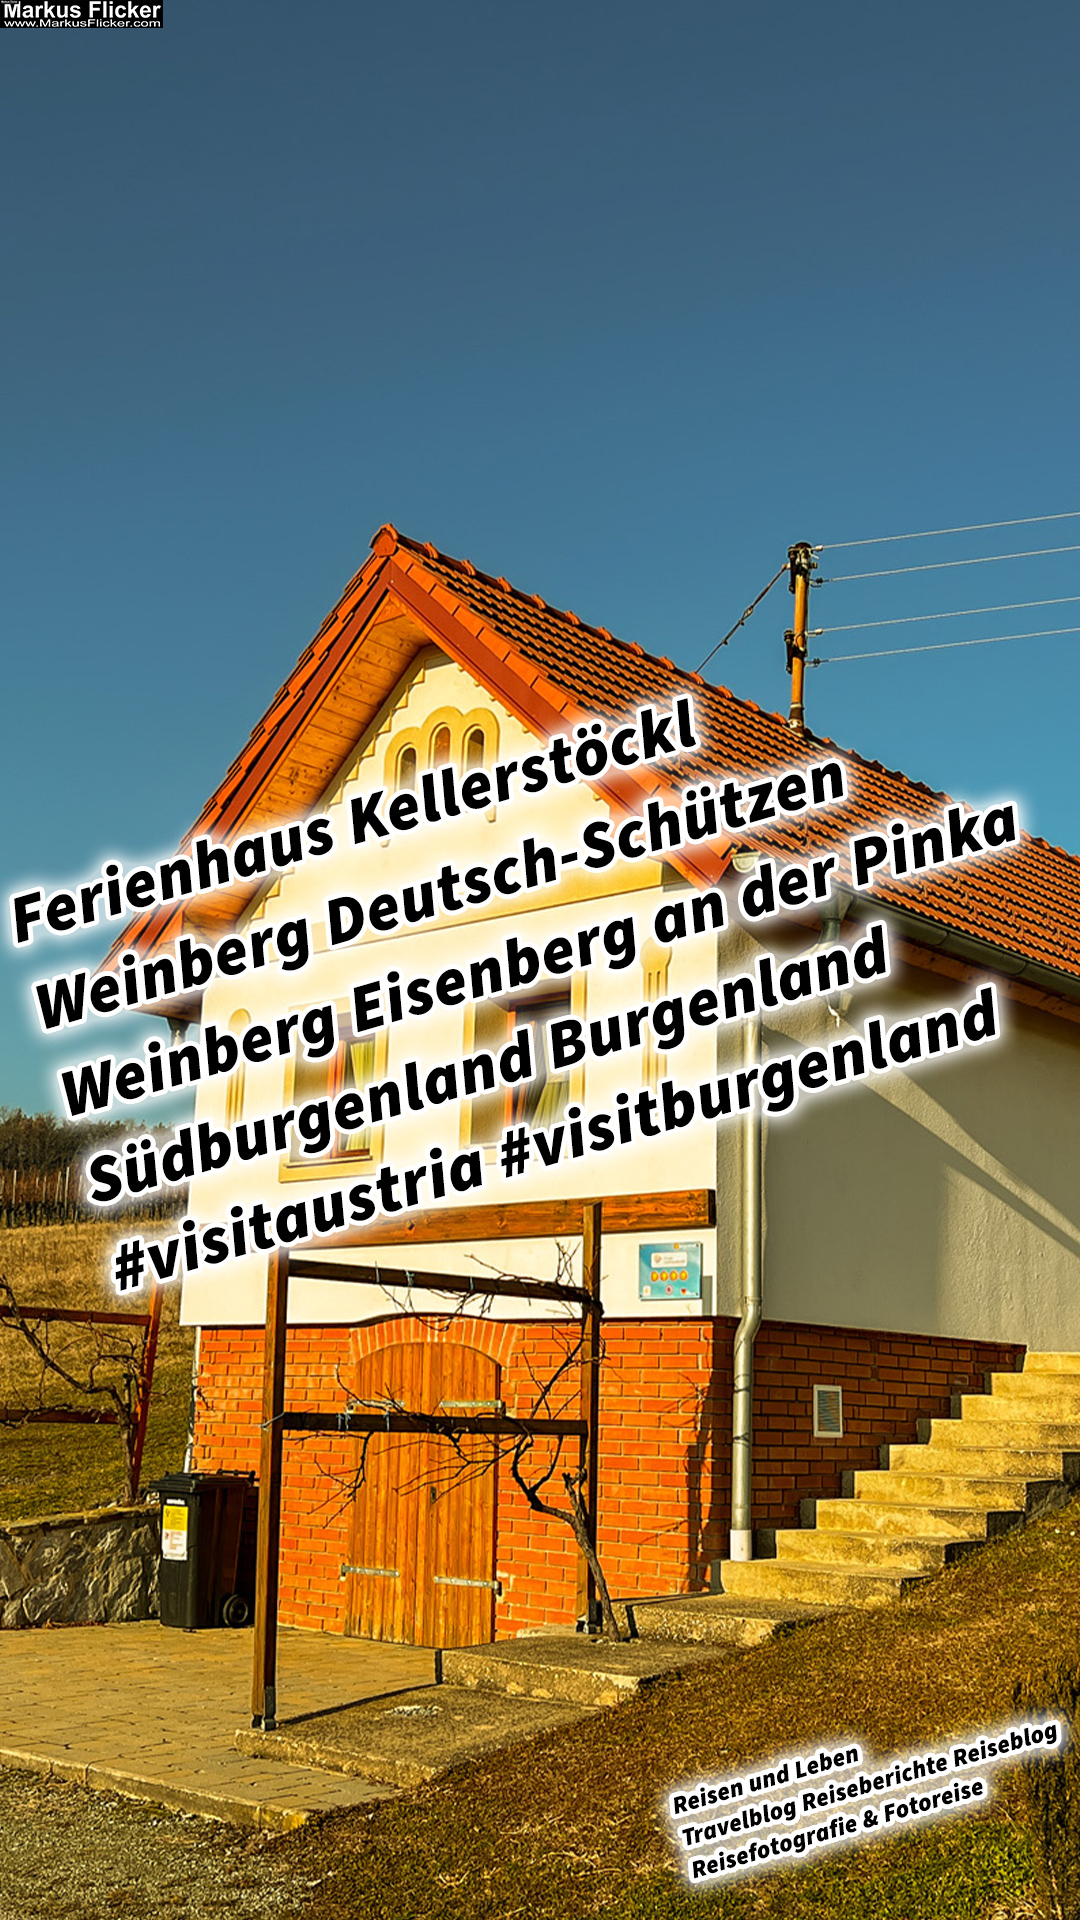 Ferienhaus Kellerstöckl Weinberg Deutsch-Schützen Weinberg Eisenberg an der Pinka Südburgenland Burgenland #visitaustria #visitburgenland